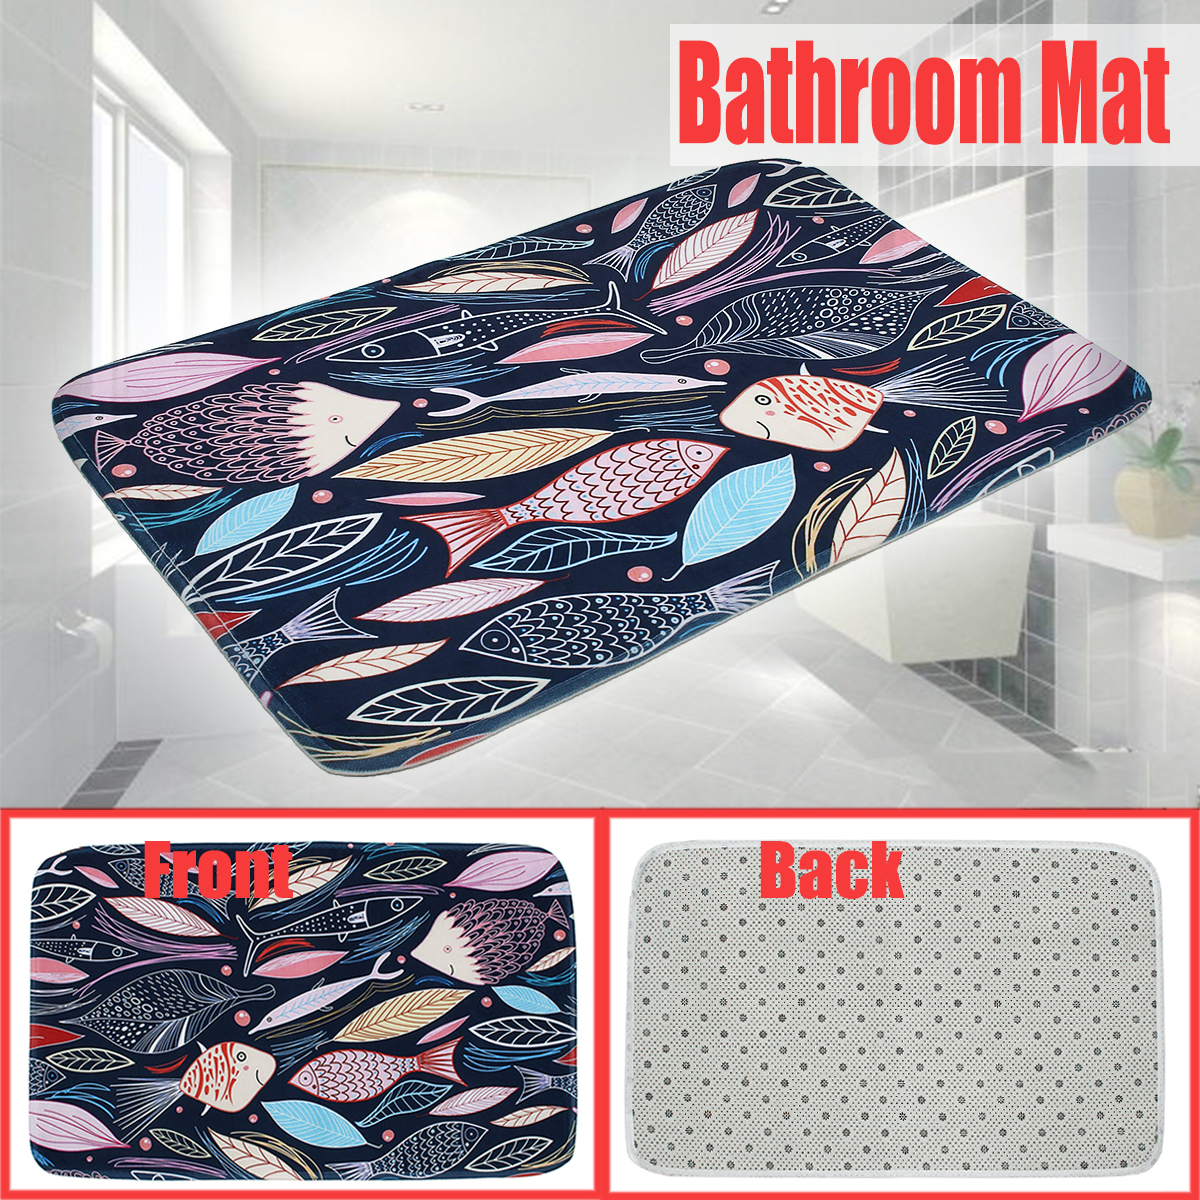 4575cm-Bathroom-Shower-Bath-Mat-Non-Slip-Back-Carpet-Mat-Toilet-Rug-Leaves-Design-1376502-1